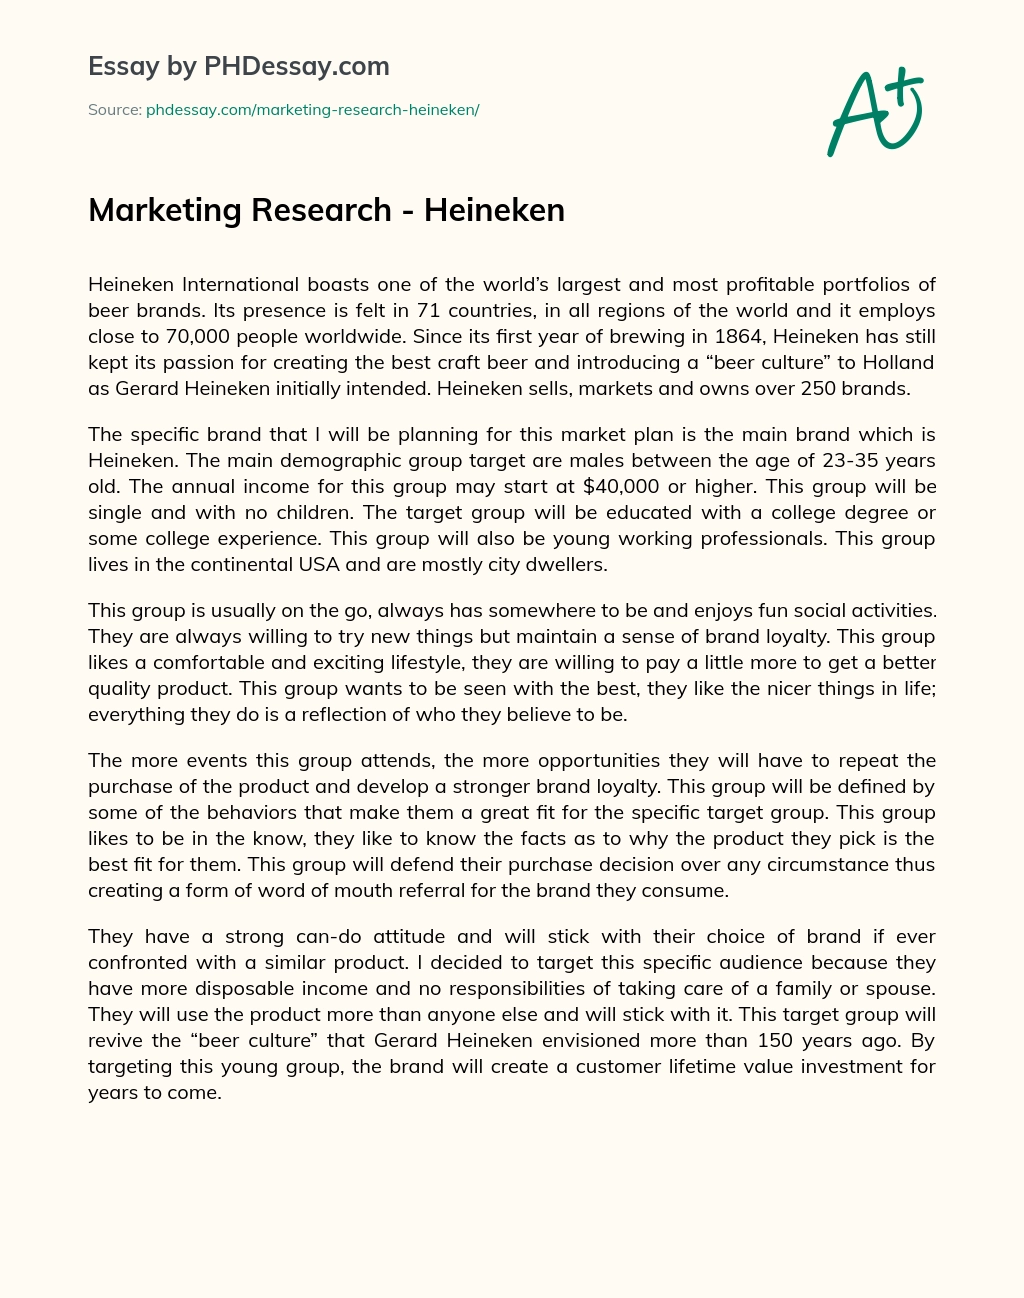 Marketing Research – Heineken essay